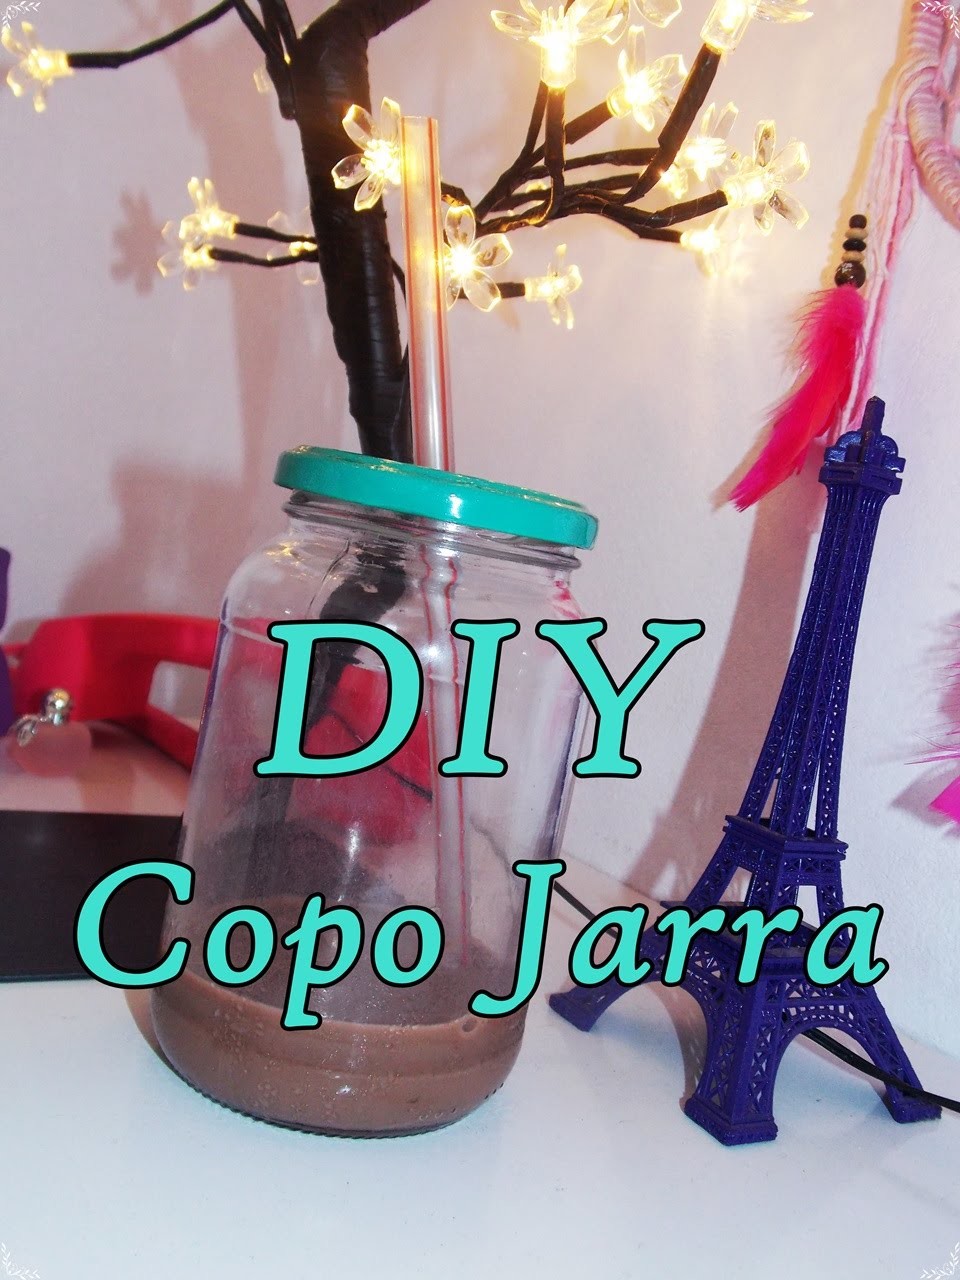 DIY -Copo Jarra -Mason Jar Cup